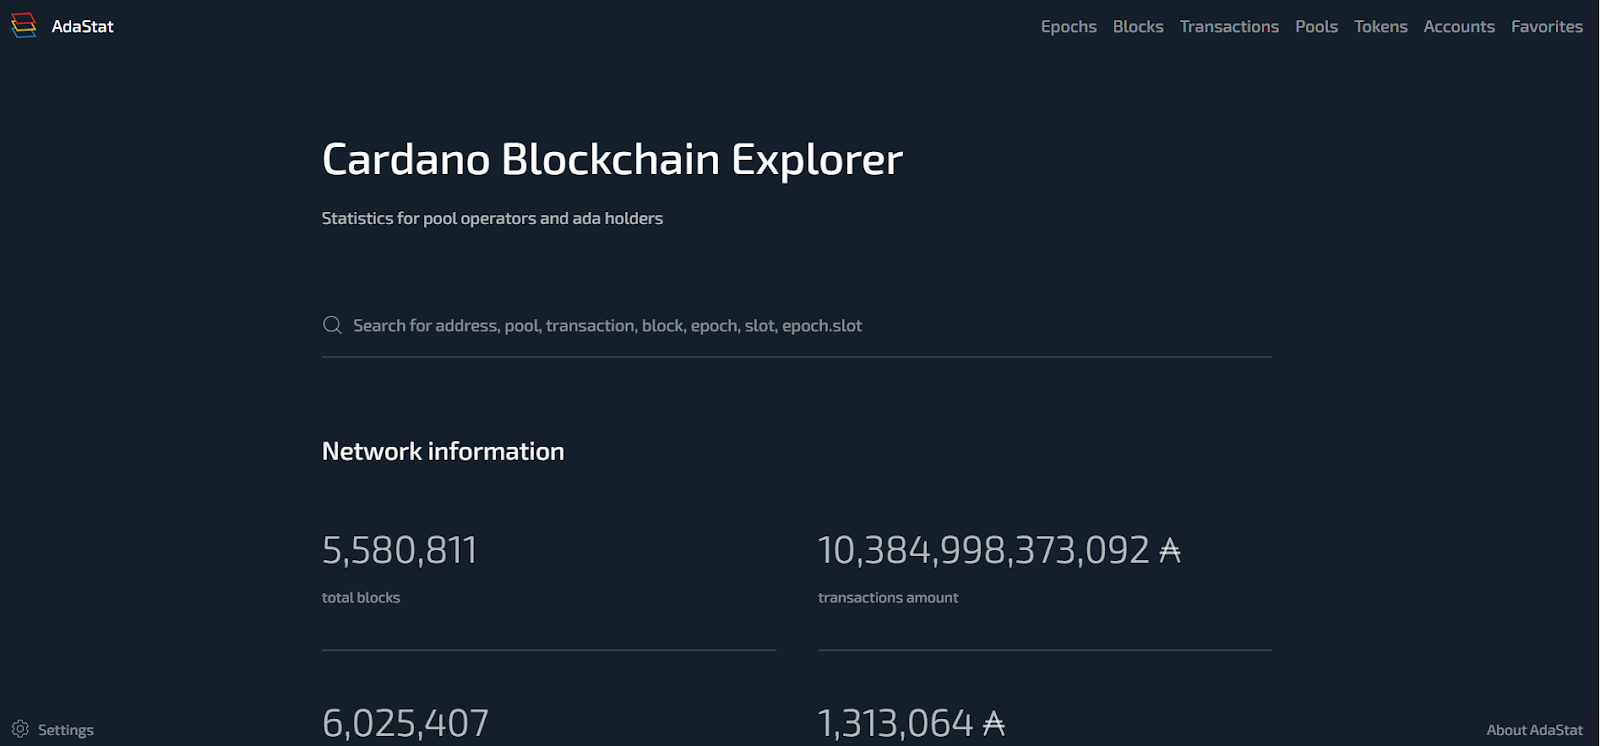 AdaStat Cardano Blockchain Explorer